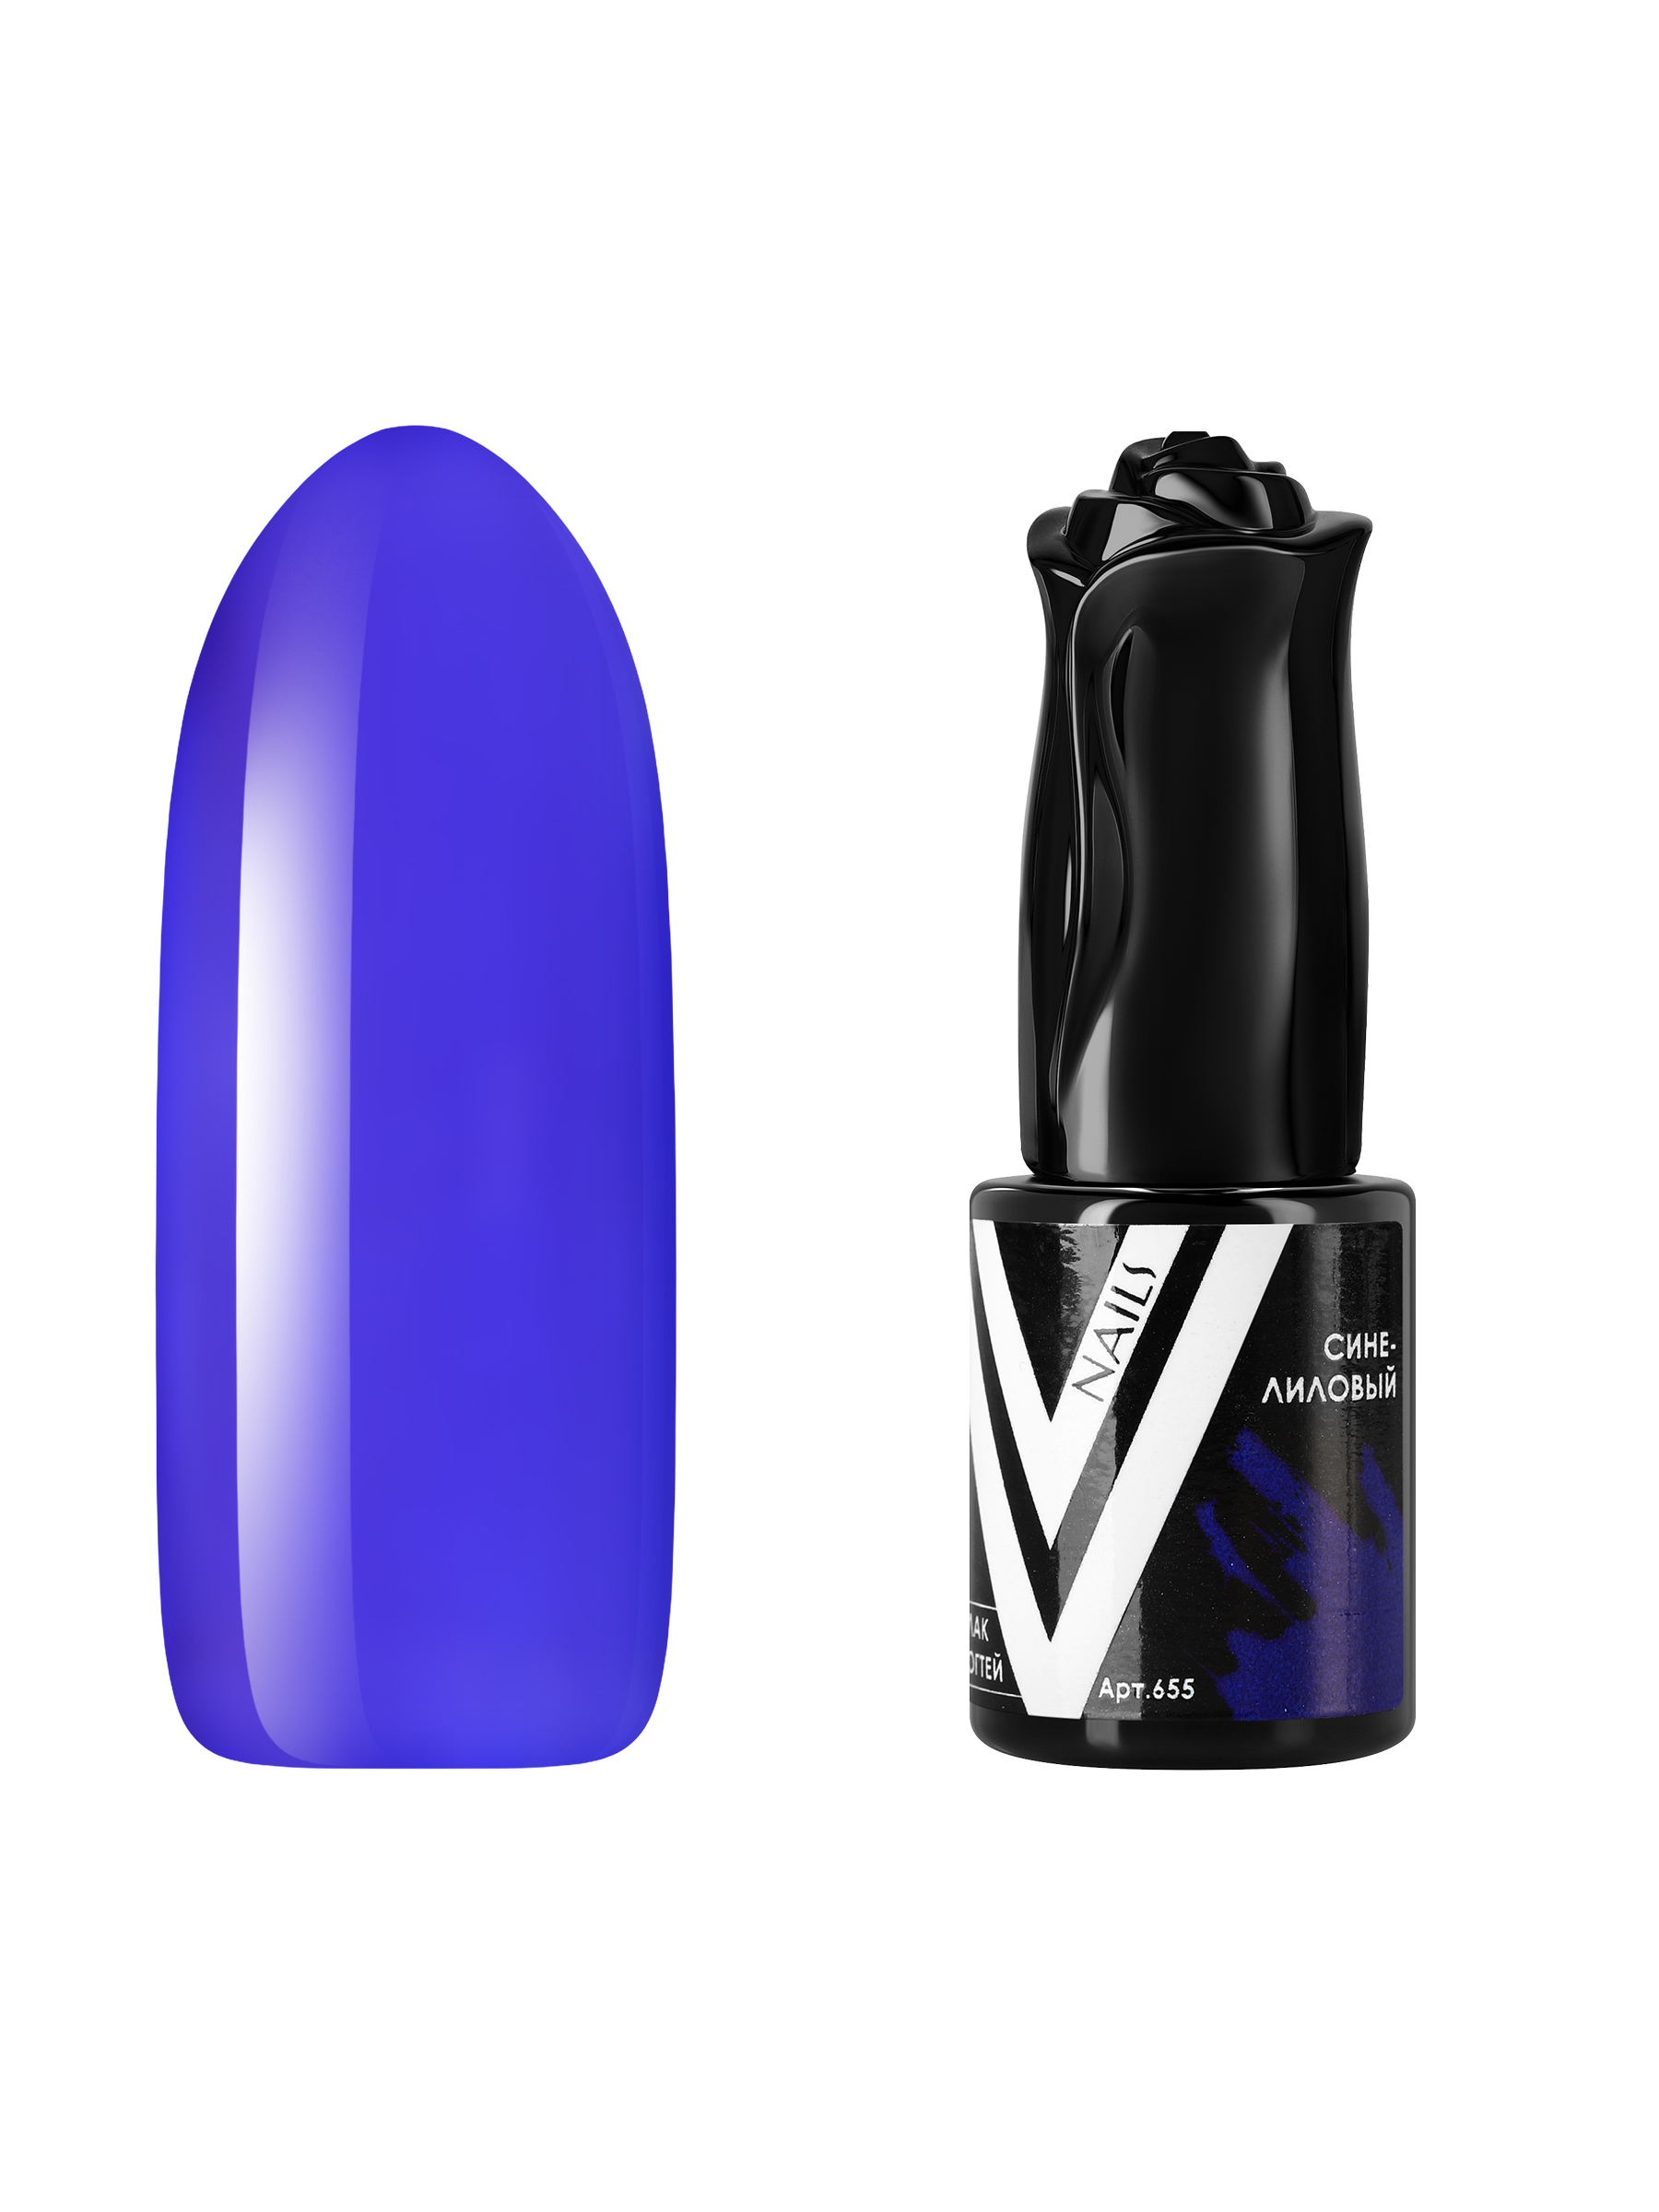 Гель-лак витражный Vogue Nails для аквариумного дизайна прозрачный фиолетовый синий, 10 мл настольная лампа корин е27 40вт синий фиолетовый 22 5х22 5х32 5 см